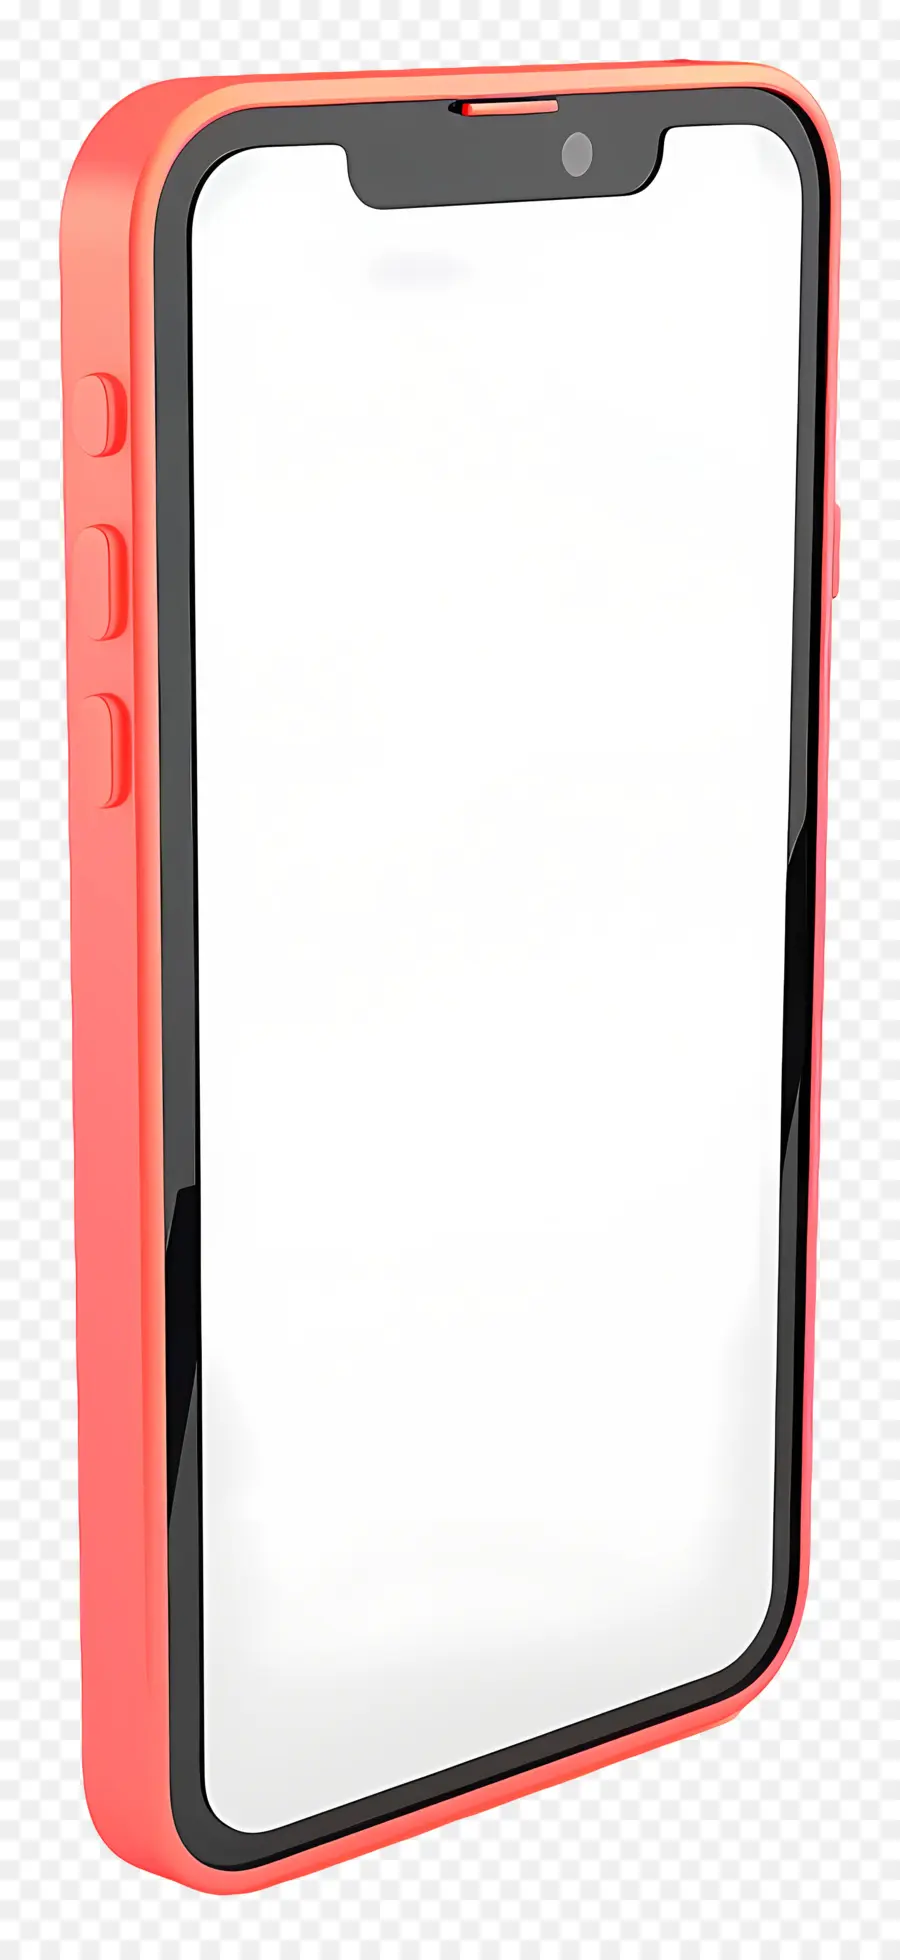 Smartphone Pink iPhone Smartphone Touchscreen Mobiles Gerät - Pinkes iPhone mit Bildschirm, keine Tasten